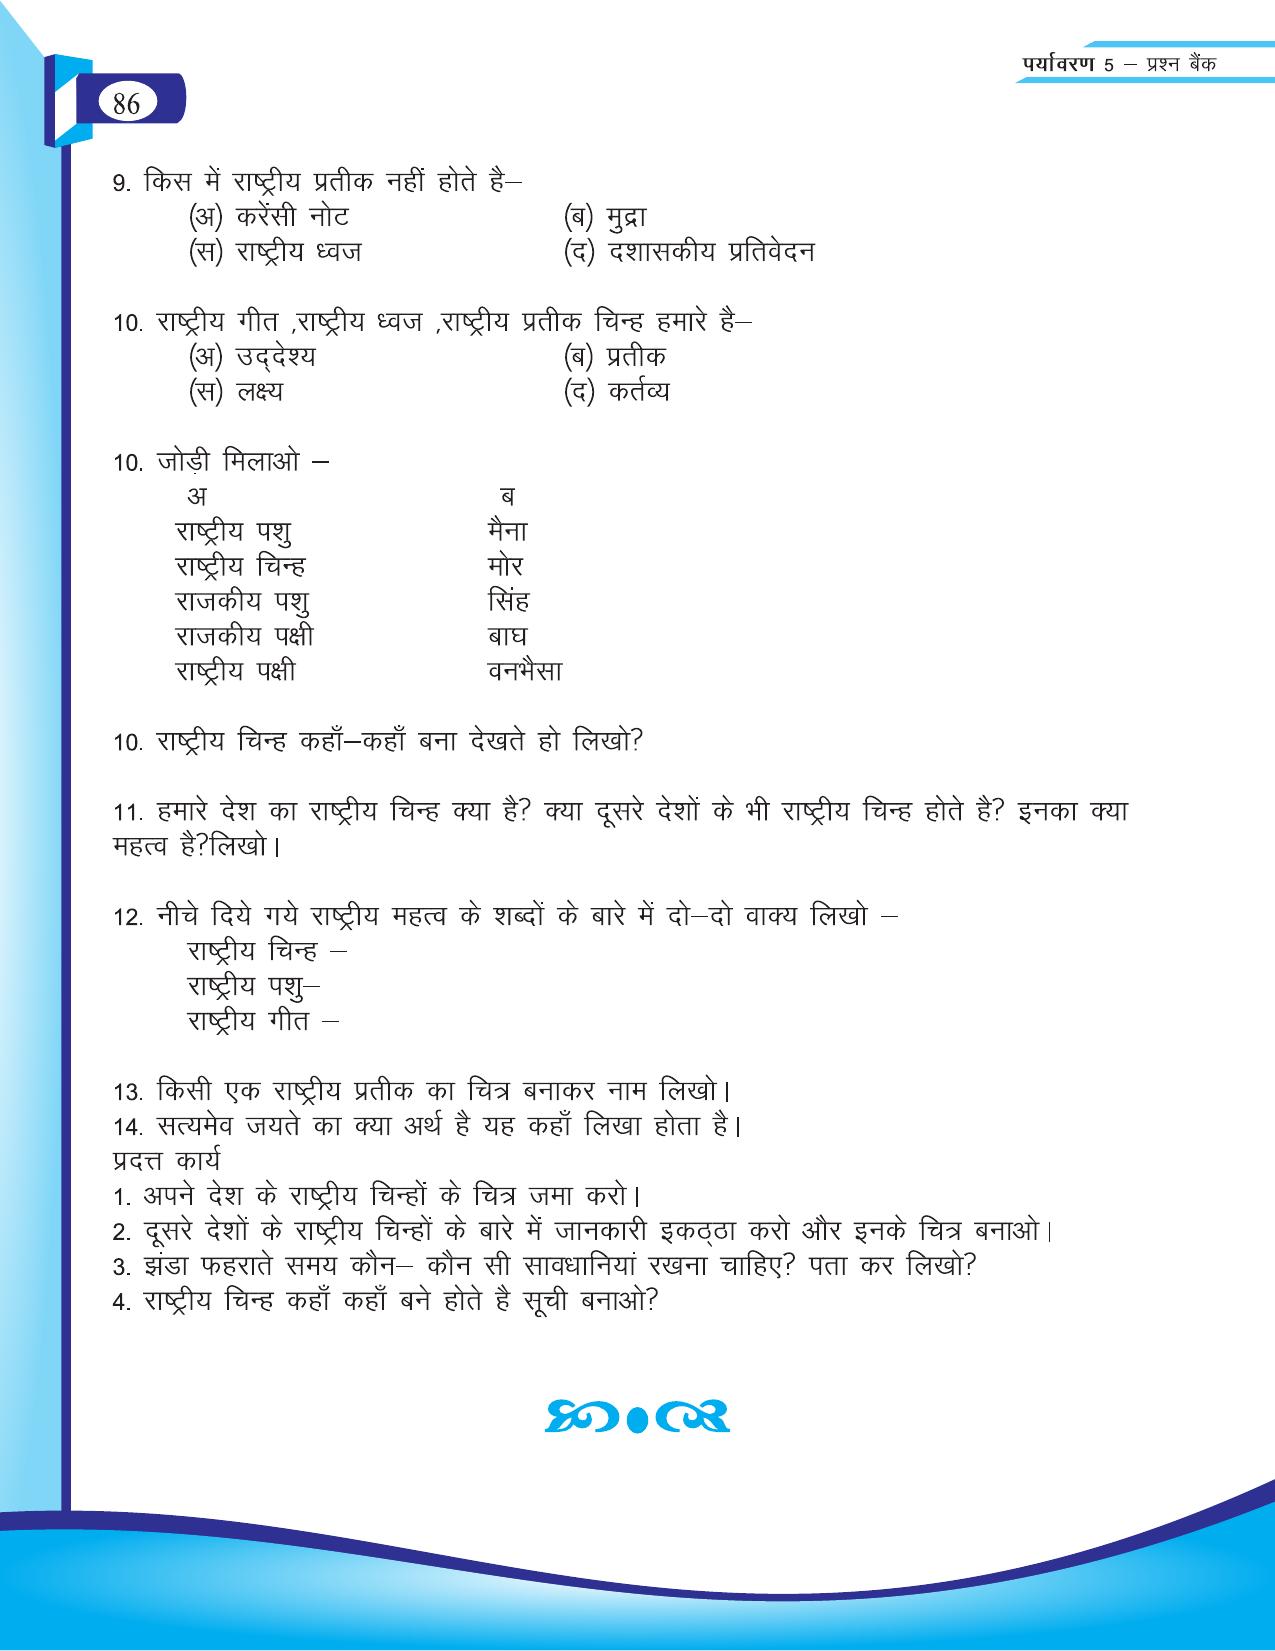 Chhattisgarh Board Class 5 EVS Question Bank 2015-16 - Page 12